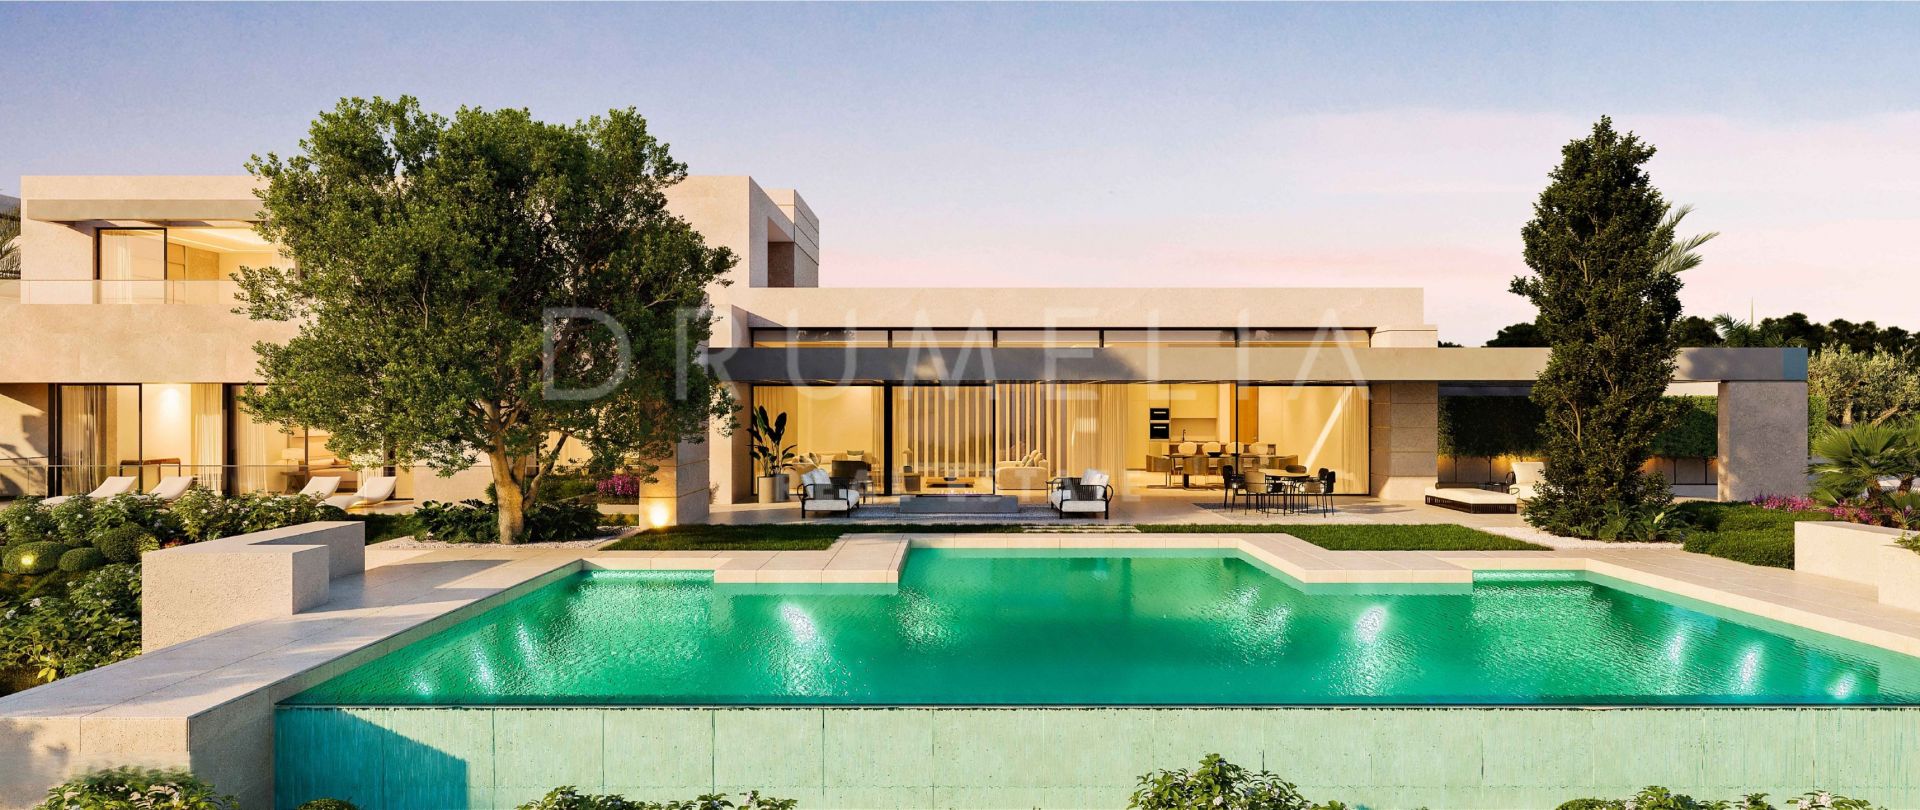 Villa de diseño impecablemente presentada a estrenar en la lujosa Sierra Blanca, Milla de Oro de Marbella